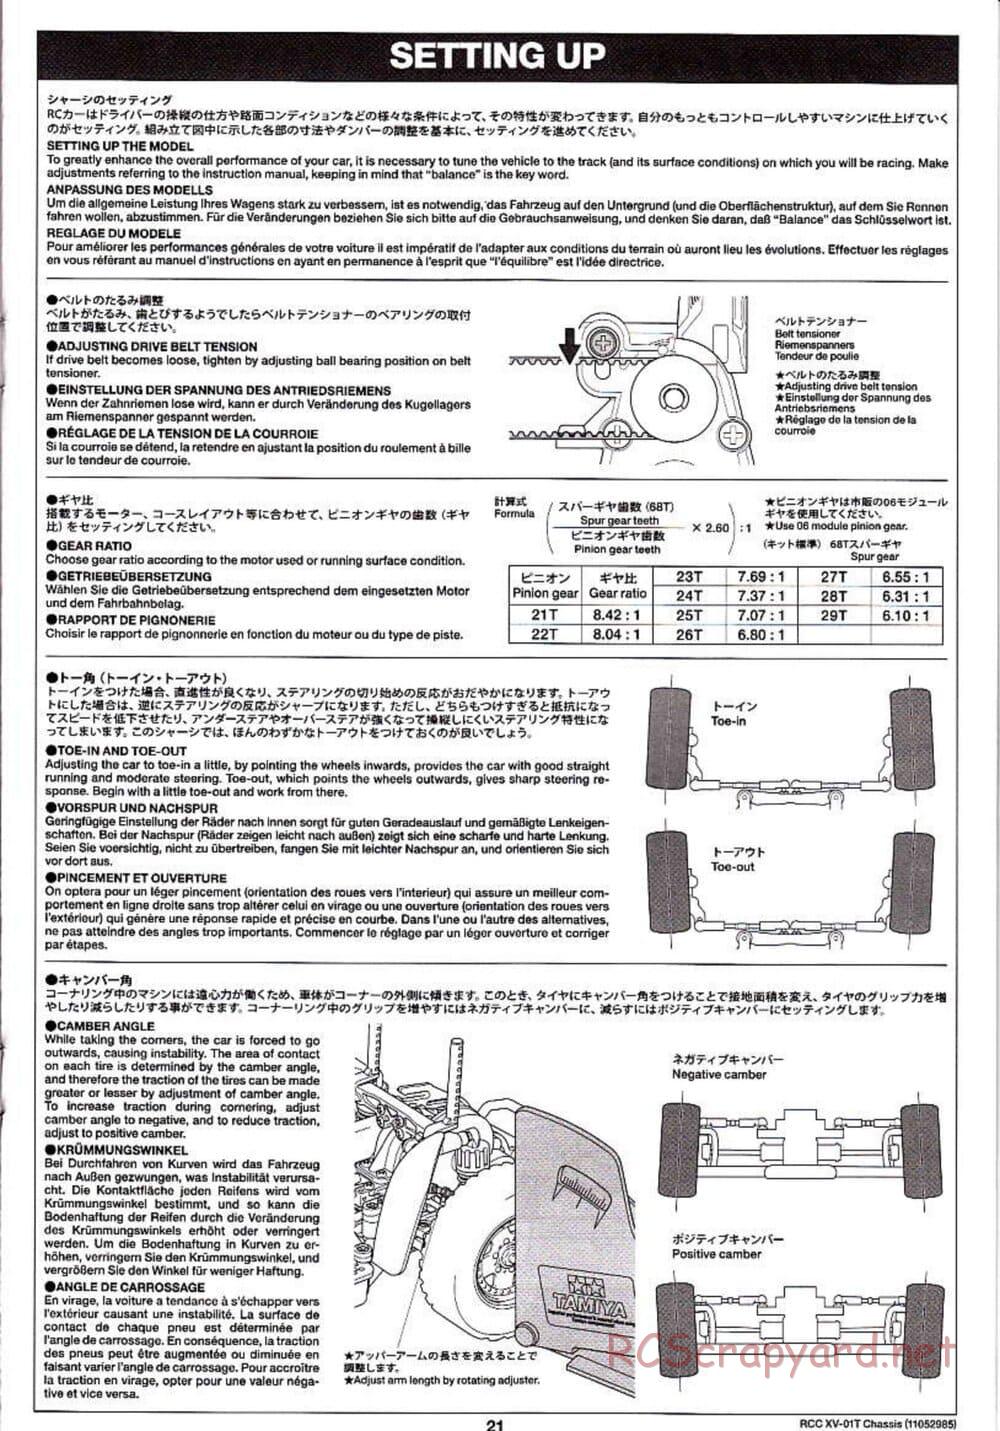 Tamiya - XV-01T Chassis - Manual - Page 21